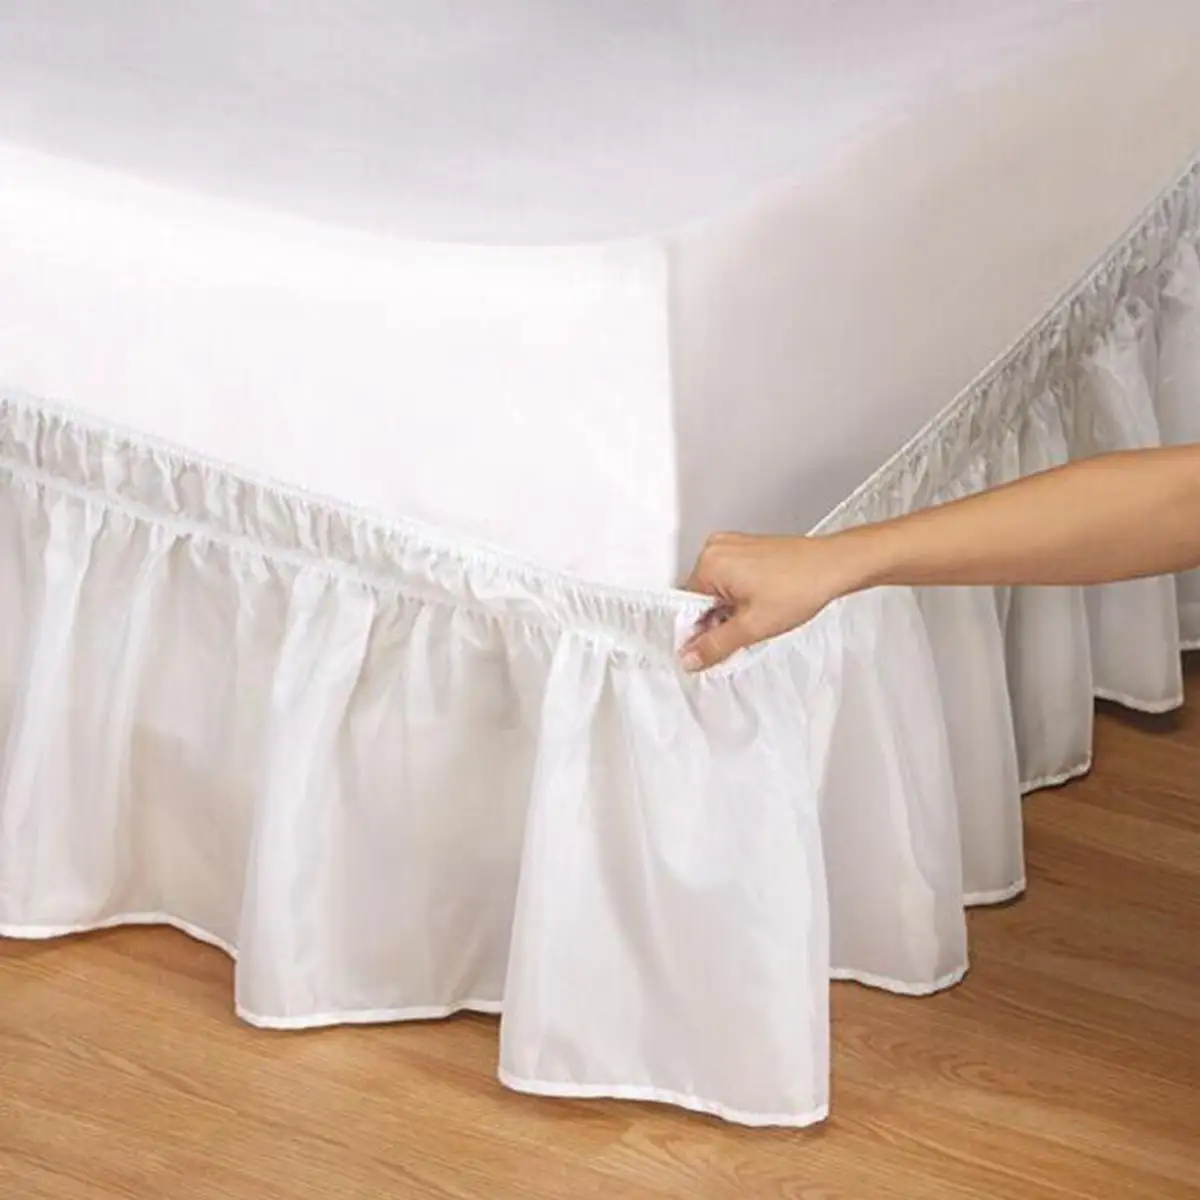 Кровать юбка для дома отель Королева Размер Белый Красный без поверхности кровать крышка эластичная кровать юбка легко Уход моющиеся постельные принадлежности